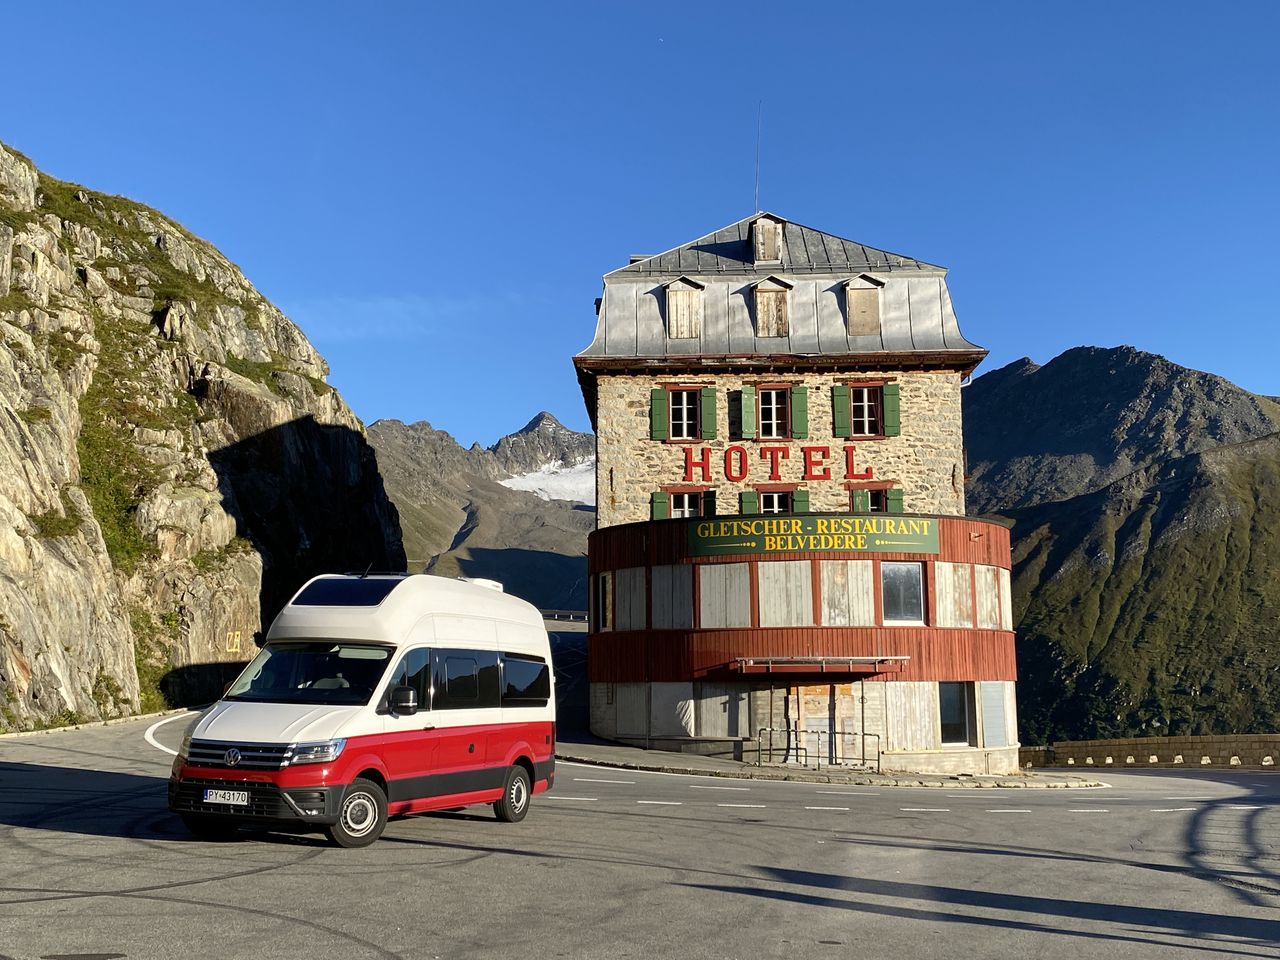 Podróż kamperem po Szwajcarii – Furkapass